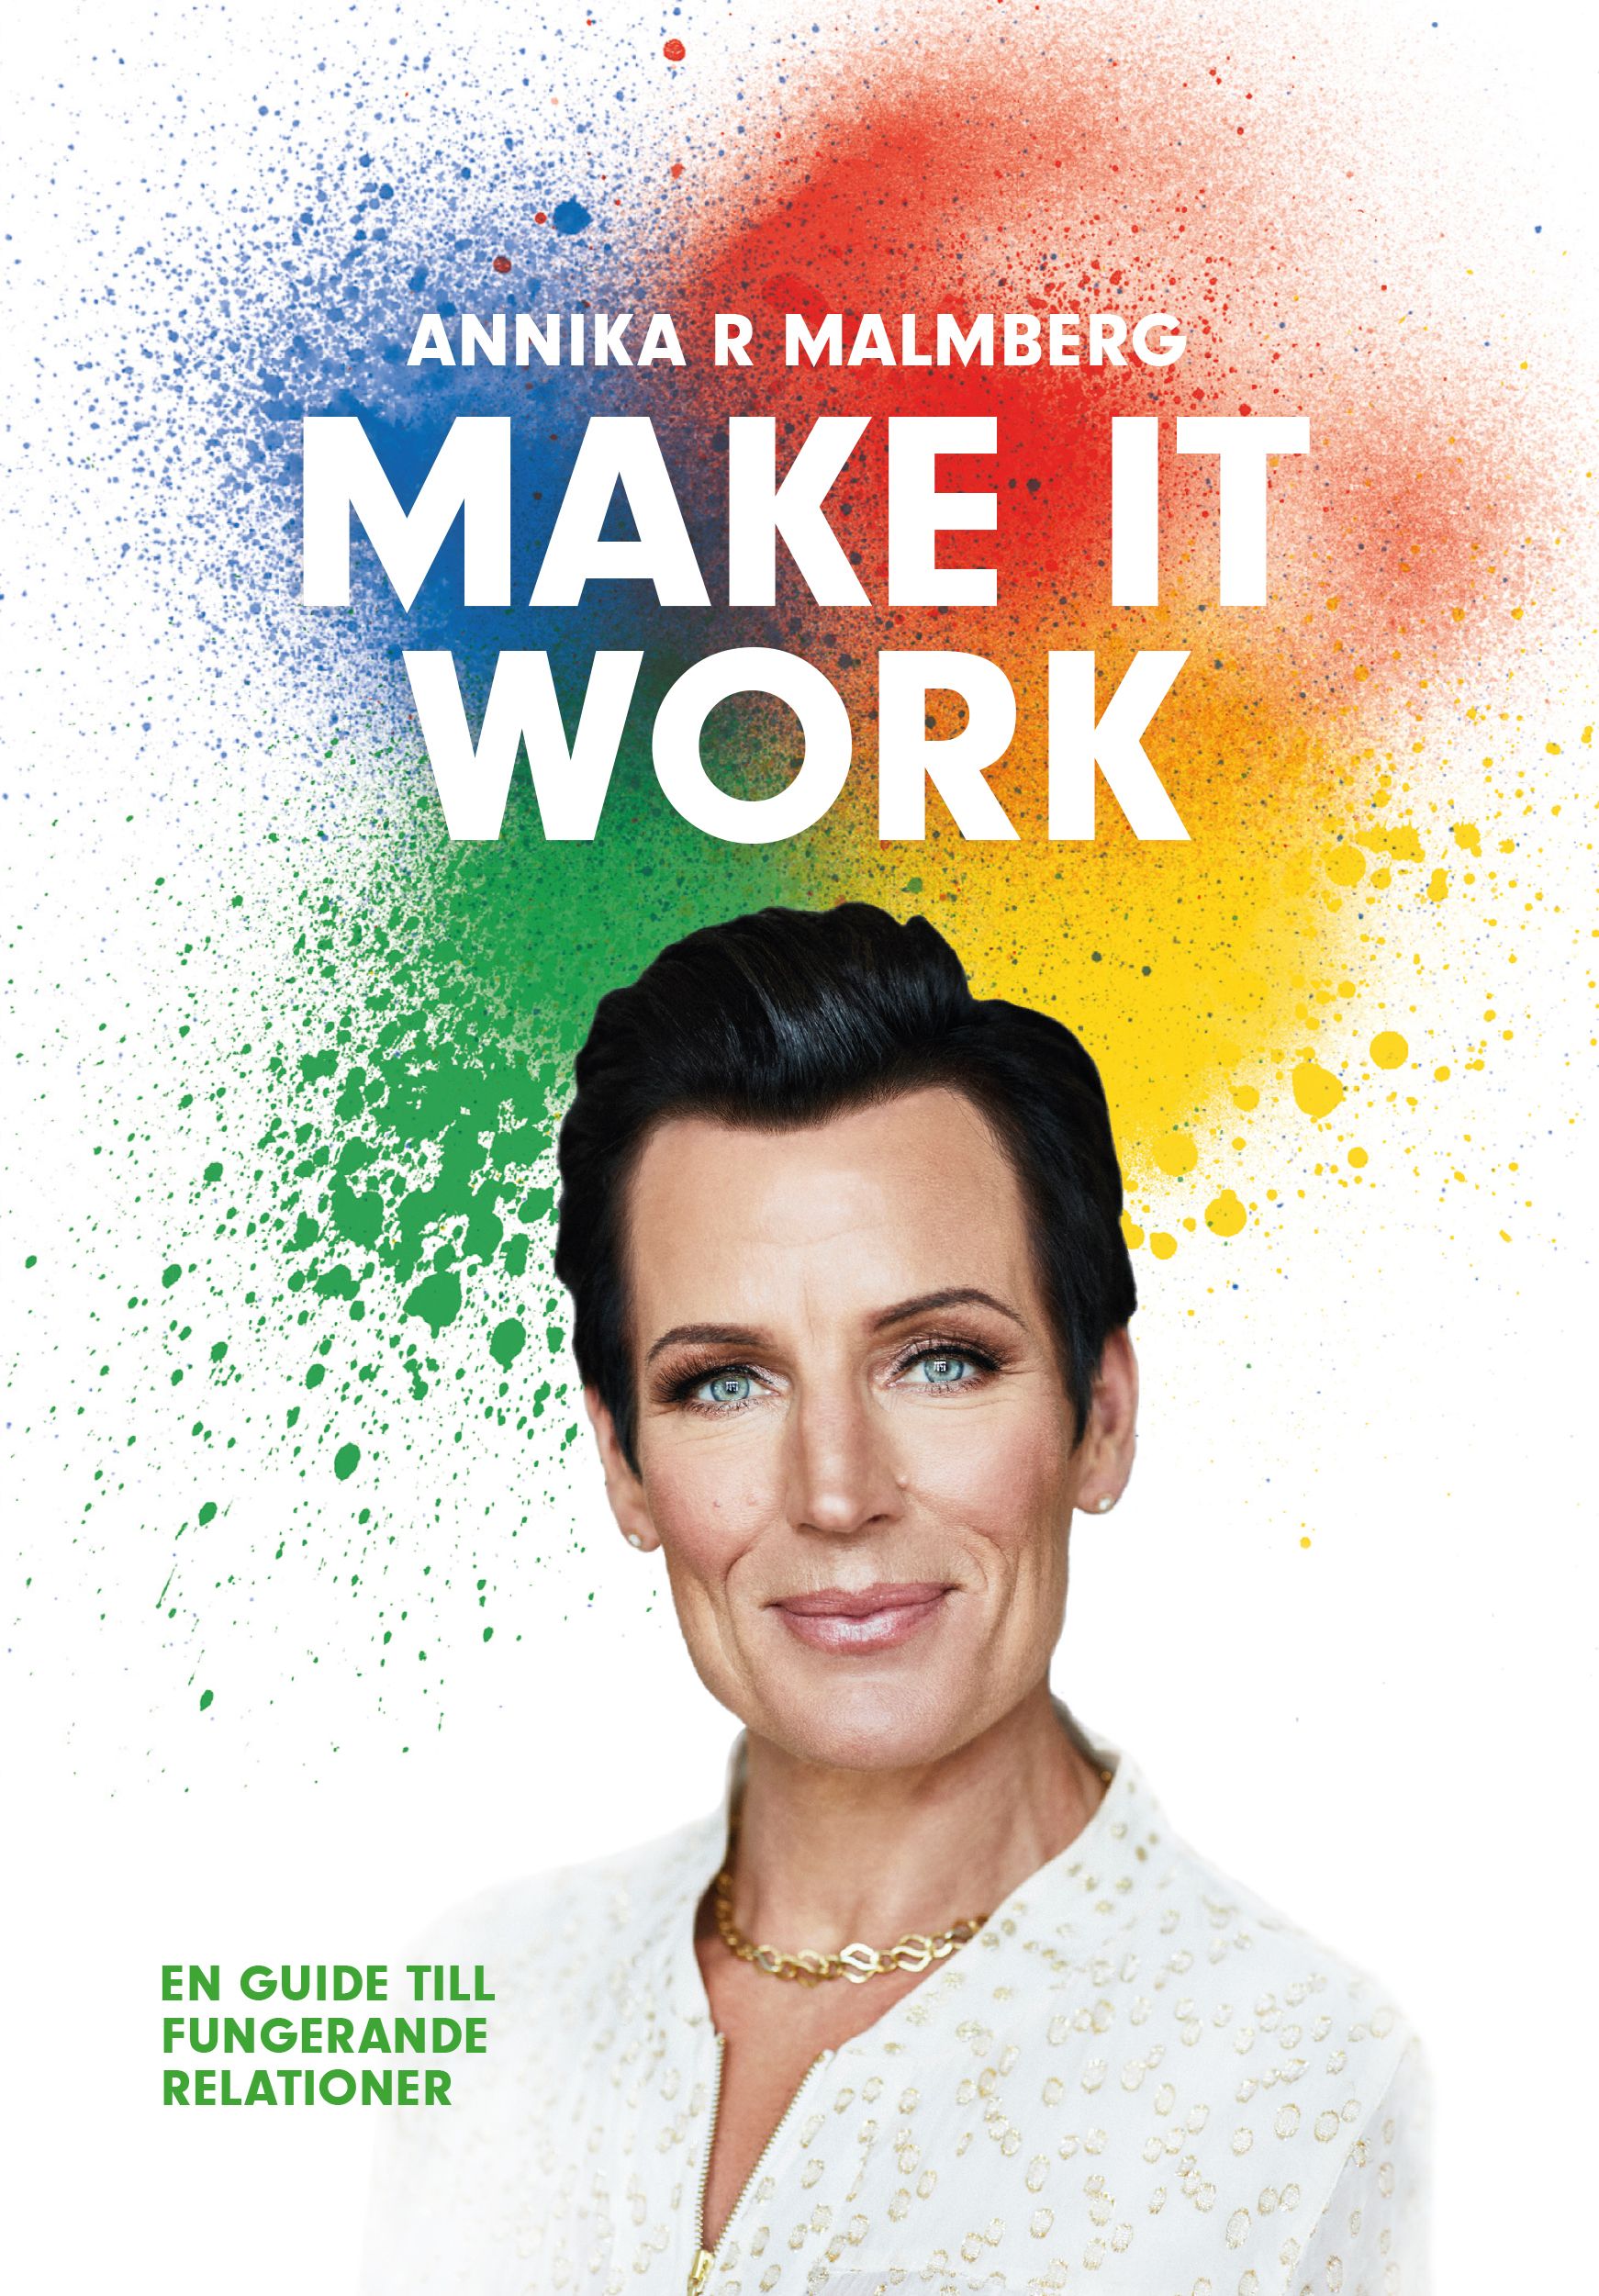 Make it work : en guide till fungerande relationer, e-bok av Annika R Malmberg